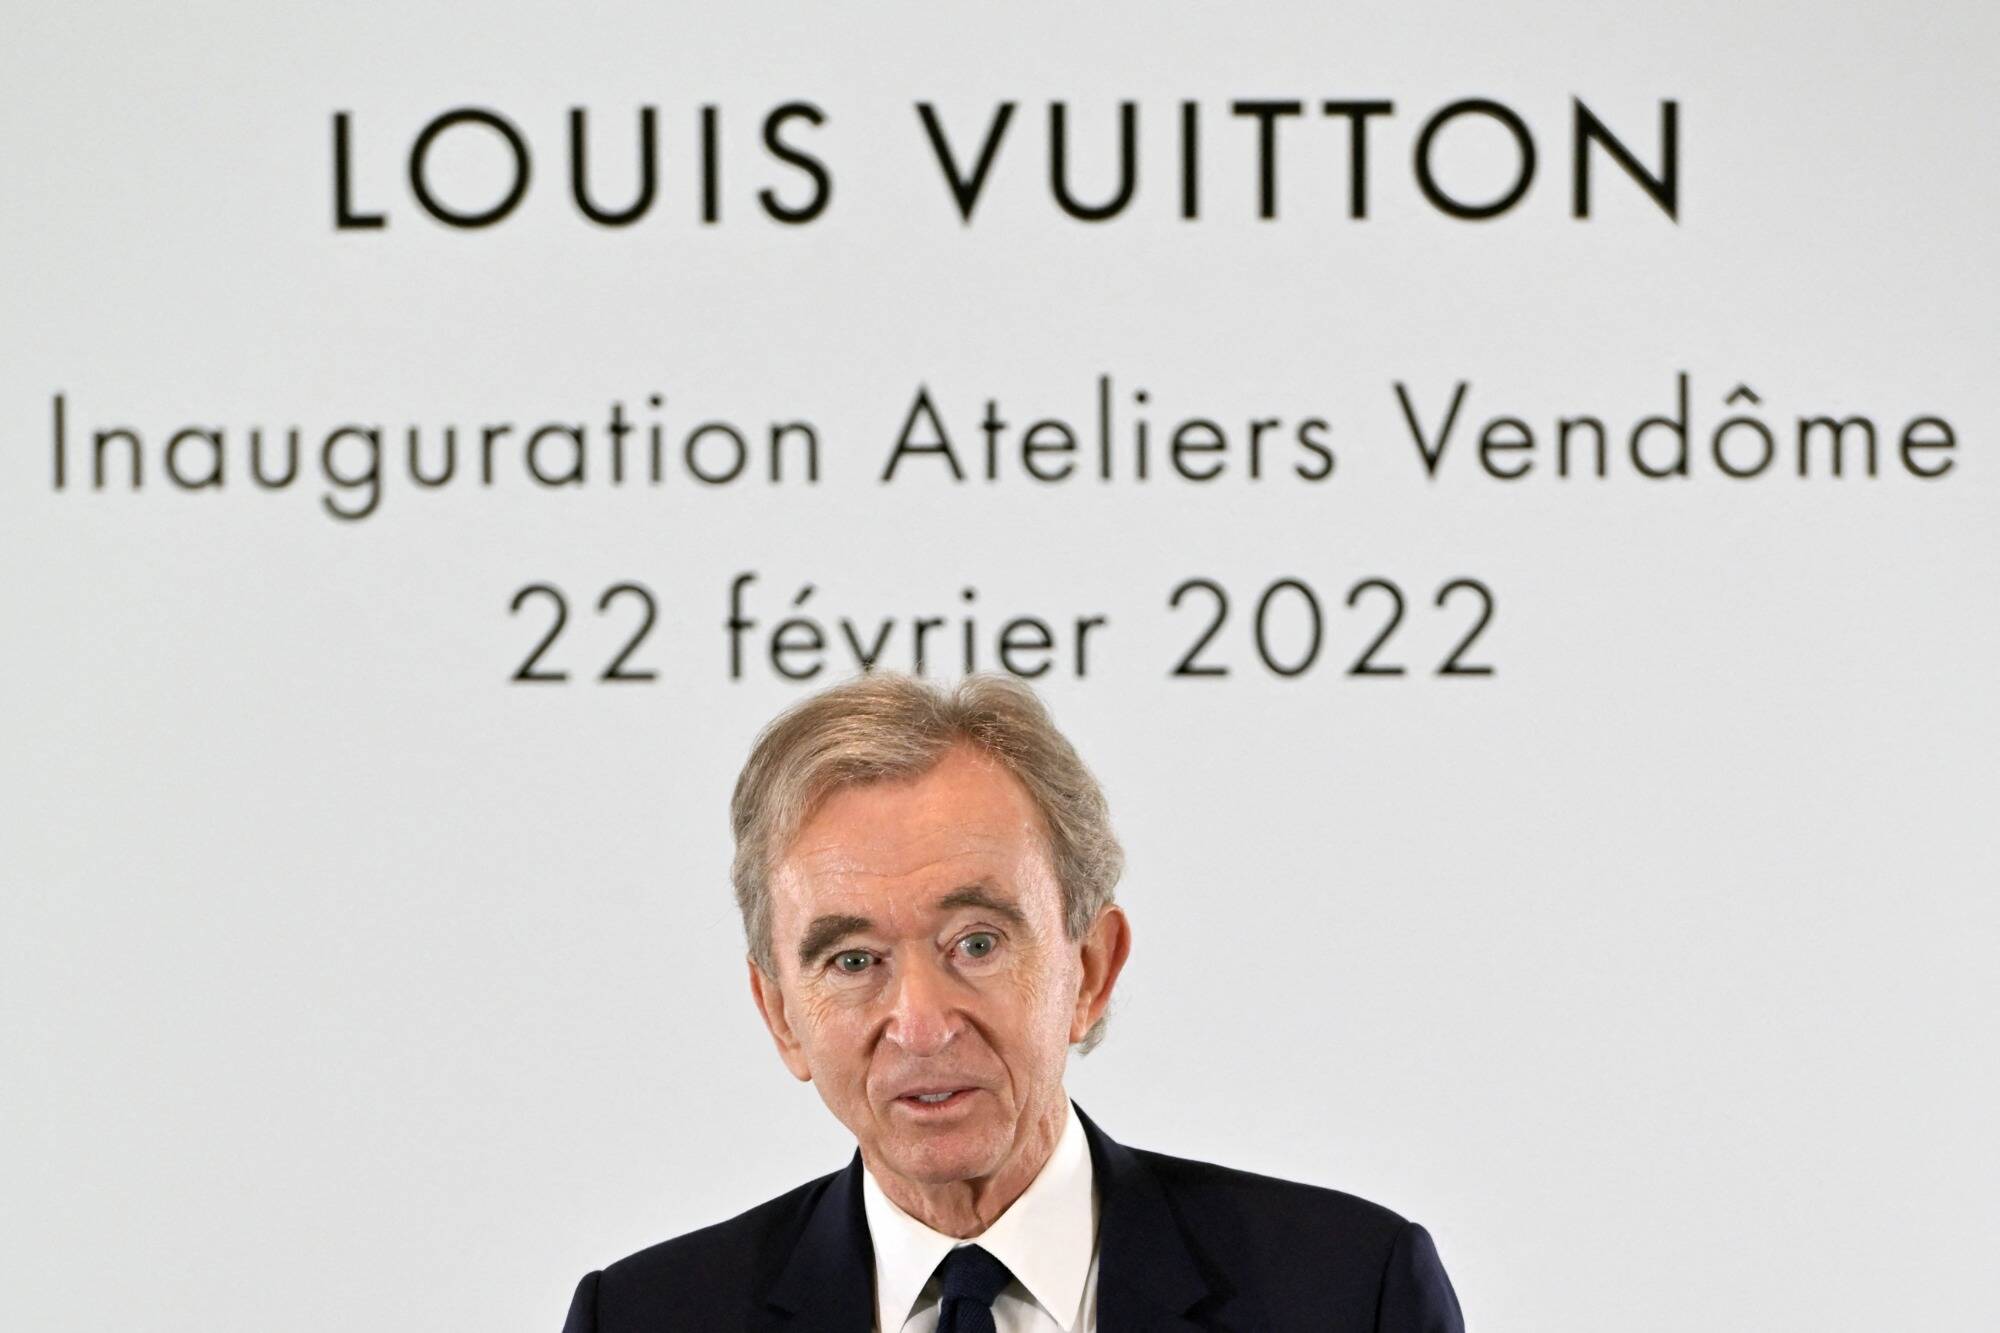 Bernard Arnault : en un jour, le patron de LVMH augmente sa fortune de près  d'un milliard d'euros -  - France, Société